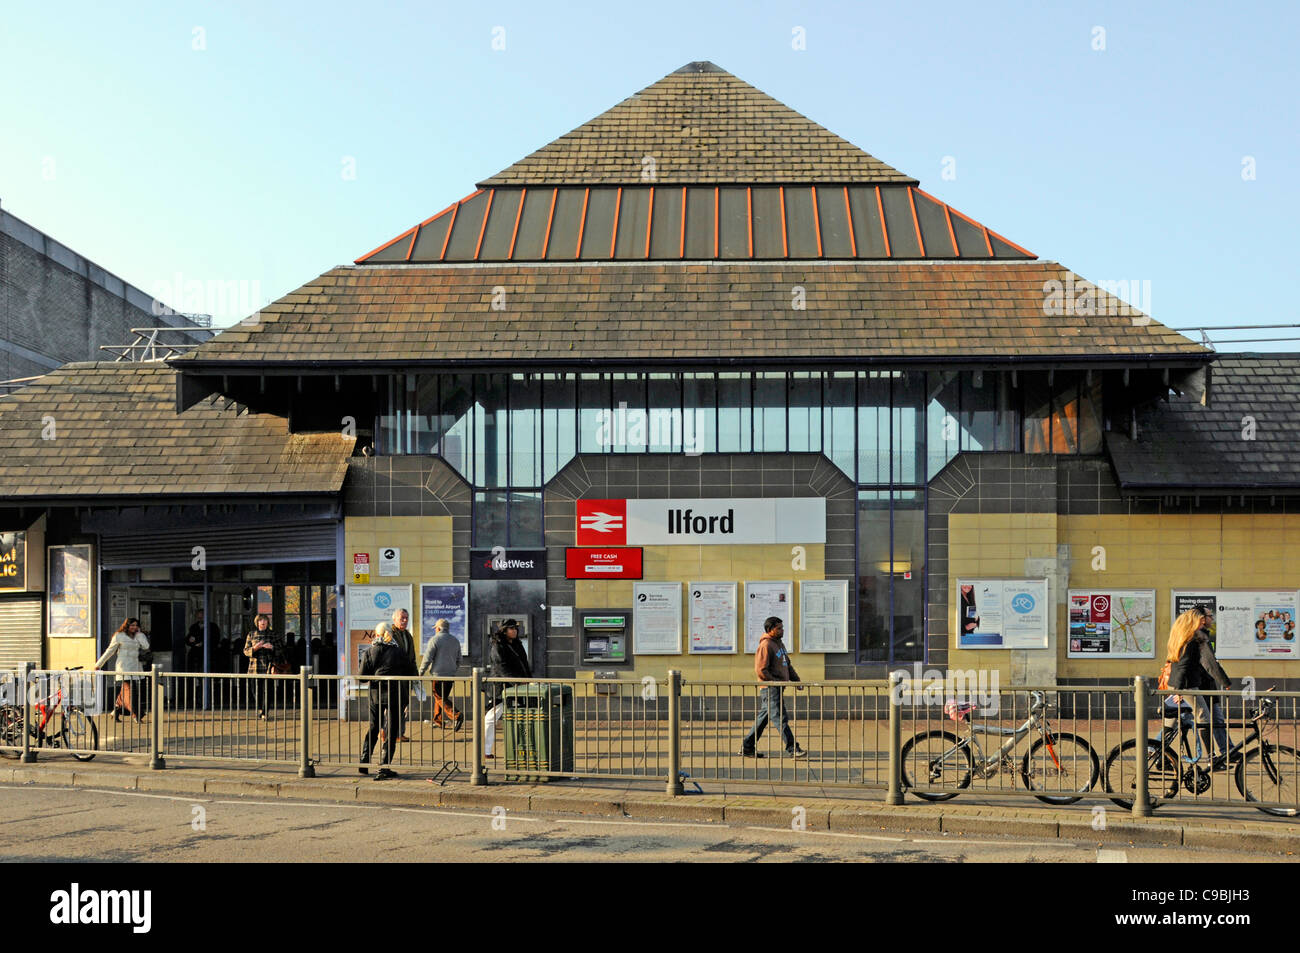 Stazione ferroviaria di Ilford facciata dei trasporti pubblici e della scena stradale persone fuori dall'ingresso Redbridge East London Inghilterra Regno Unito (Ilford era nell'Essex) Foto Stock